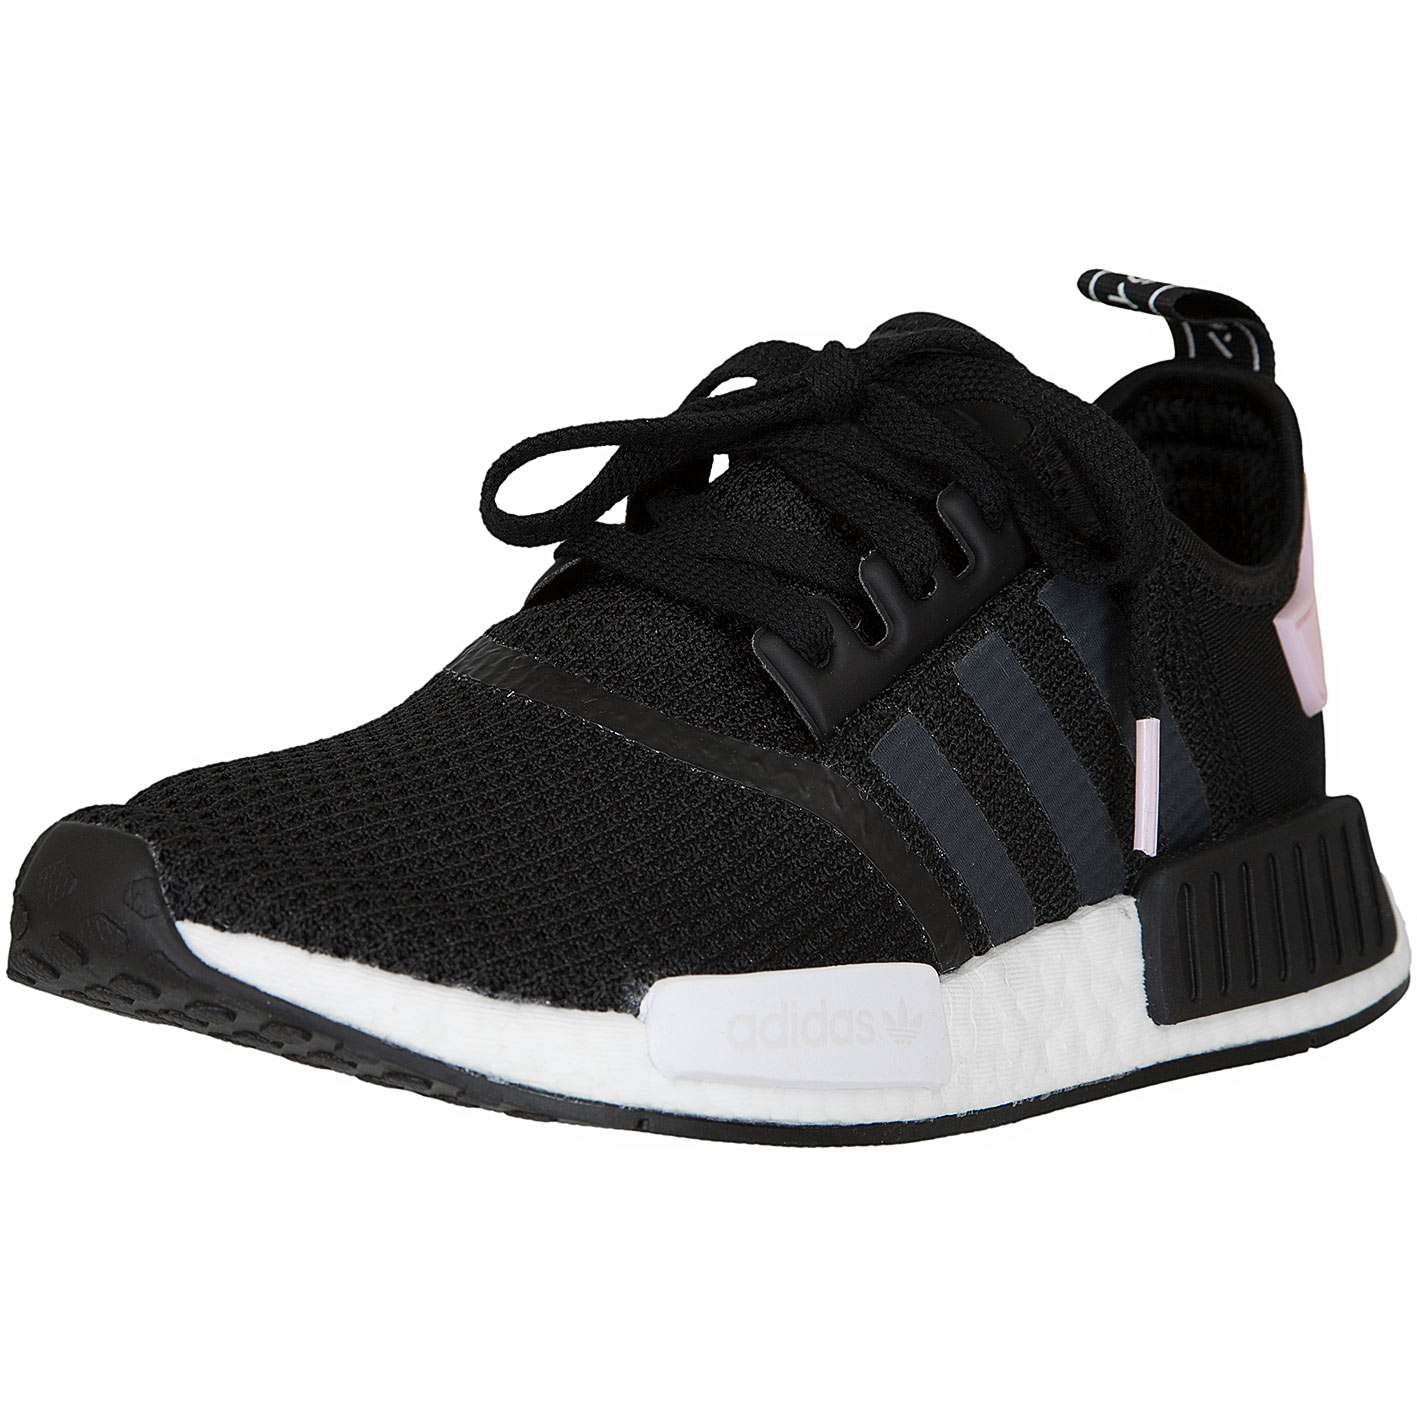 ☆ Adidas Originals Damen Sneaker NMD R1 schwarz/weiß/pink - hier bestellen!